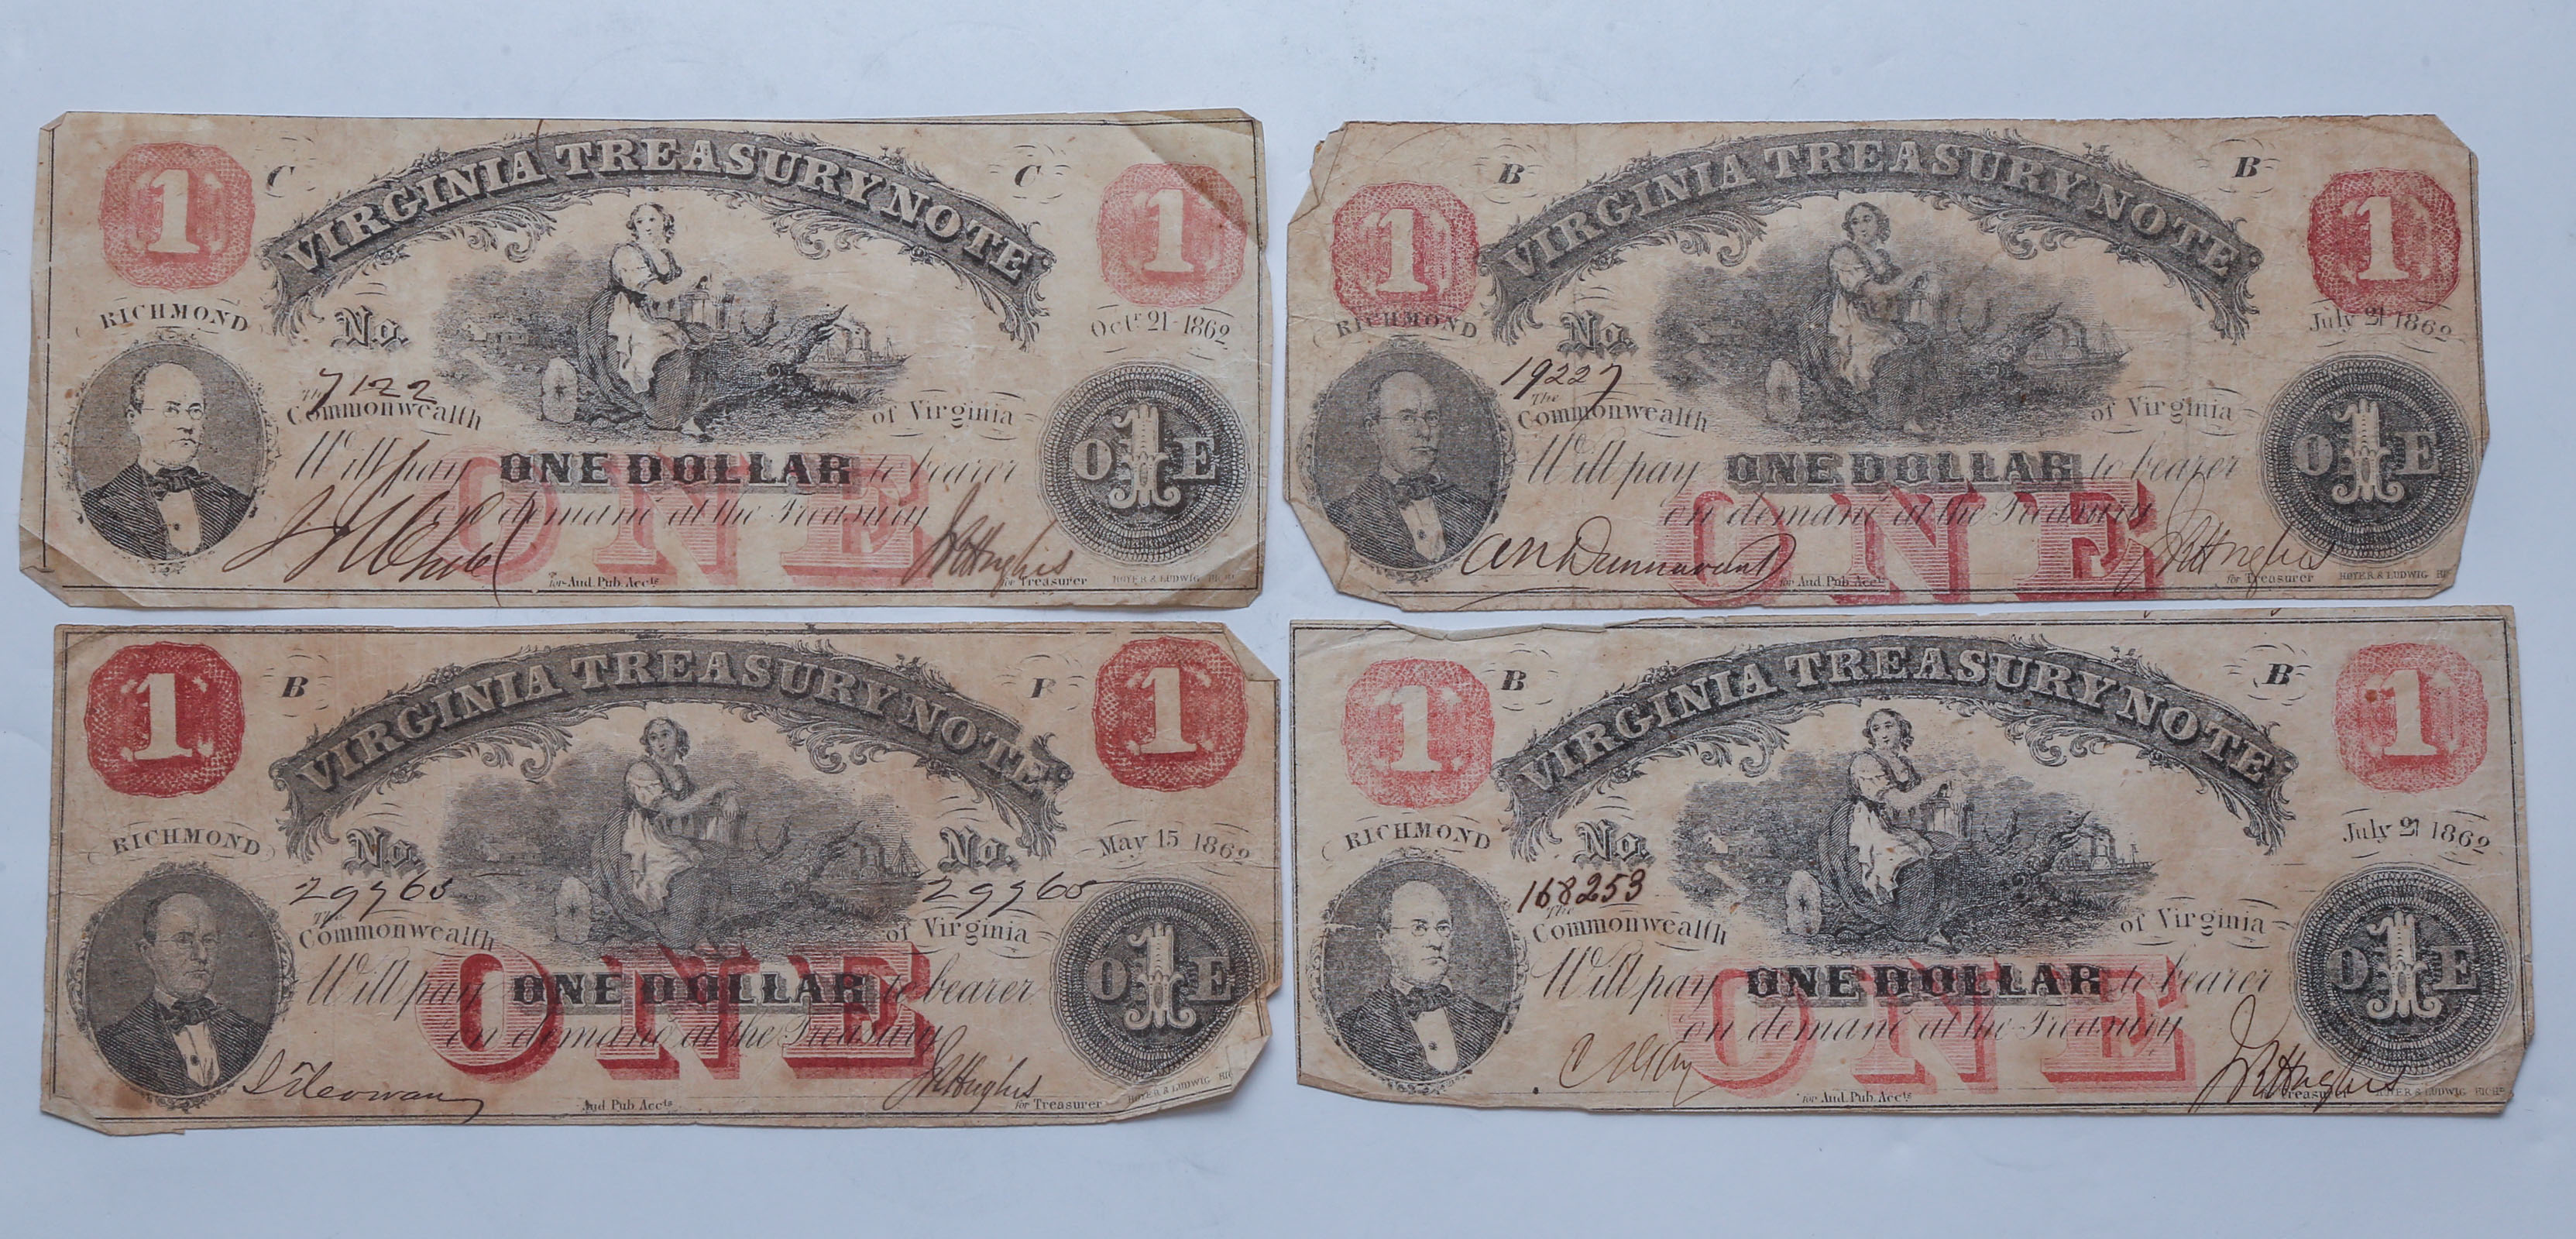 FOUR 1862 $1 VIRGINIA TREASURY